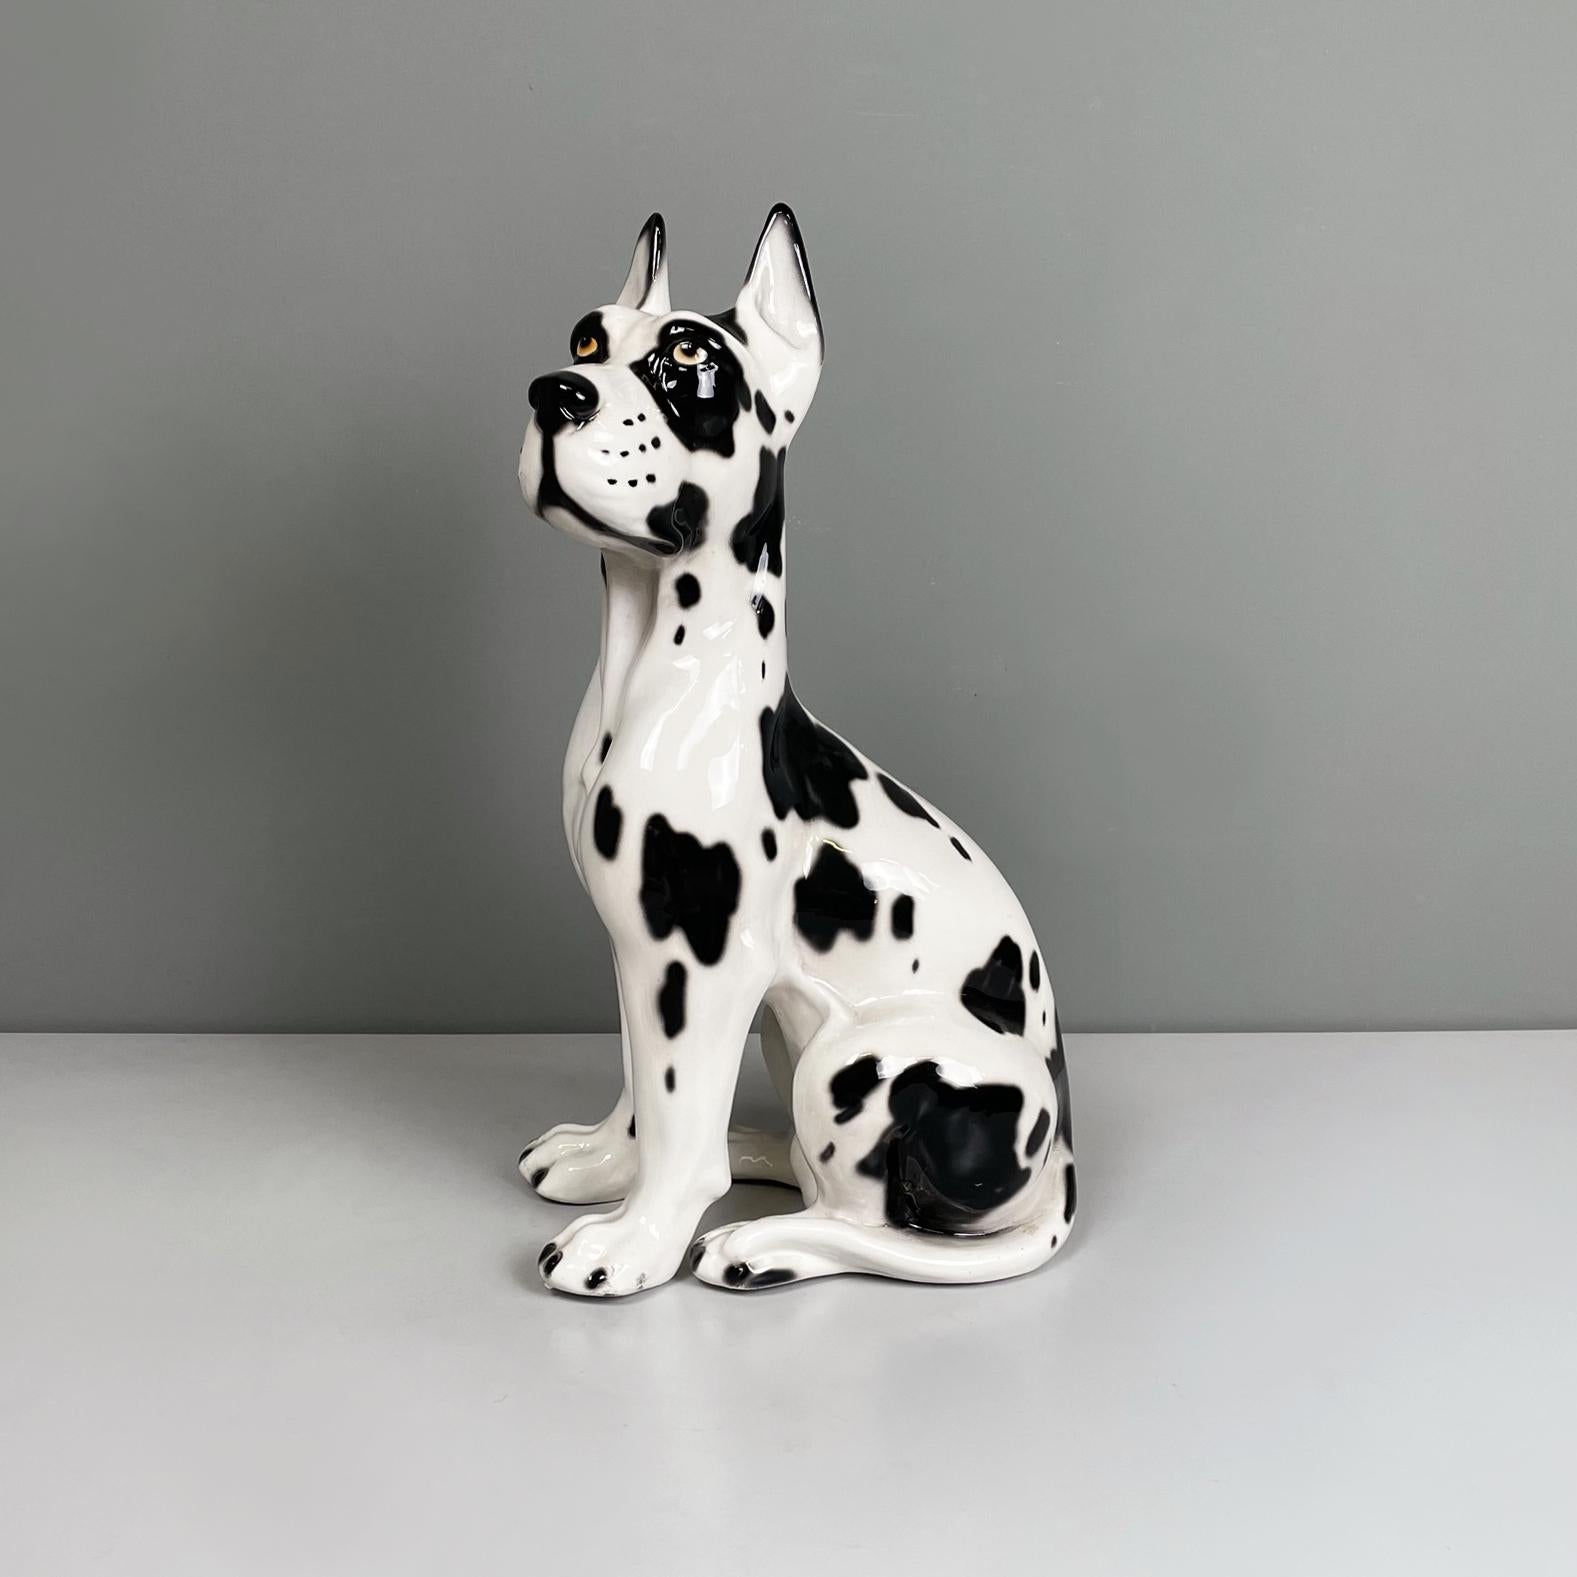 Italienische moderne Schwarze und weiße Keramikskulptur von Harlekin Dogge Hund, 1980er Jahre
Keramikskulptur, die eine auf den Hinterbeinen sitzende Harlekin-Dogge darstellt. Der Hund hat den charakteristischen muskulösen Körperbau mit schwarzen